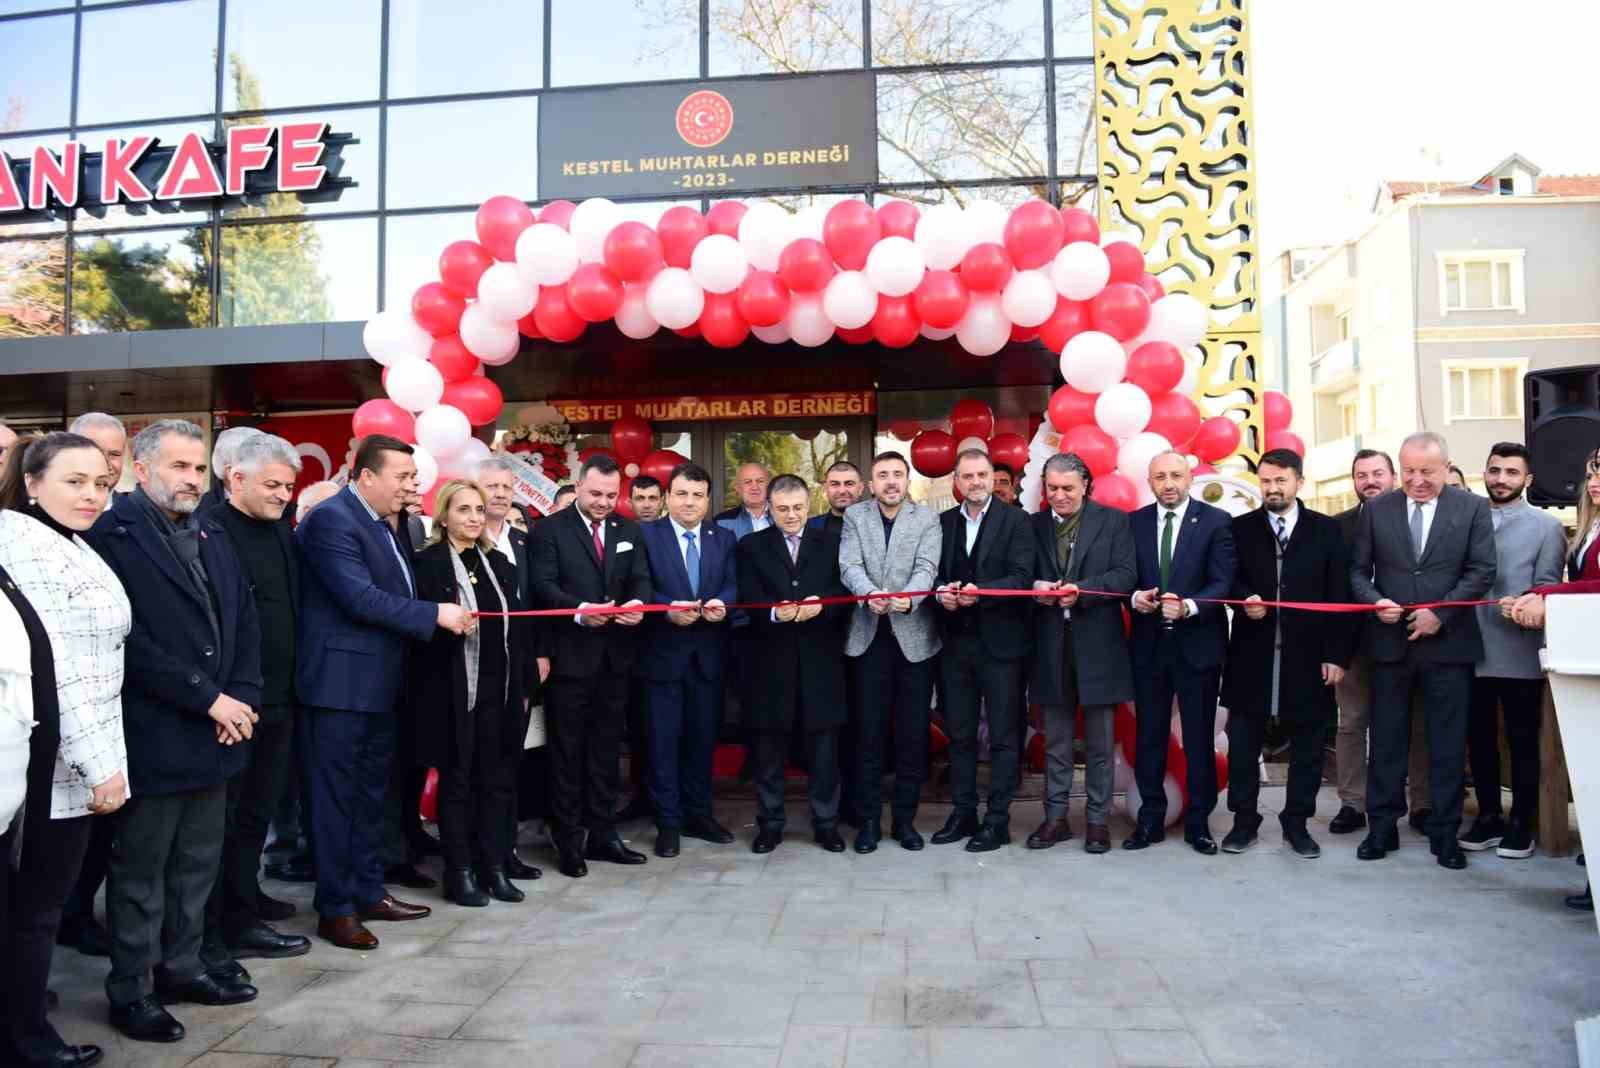 Kestel Muhtarlar Derneğinin Yeni Binası Açıldı